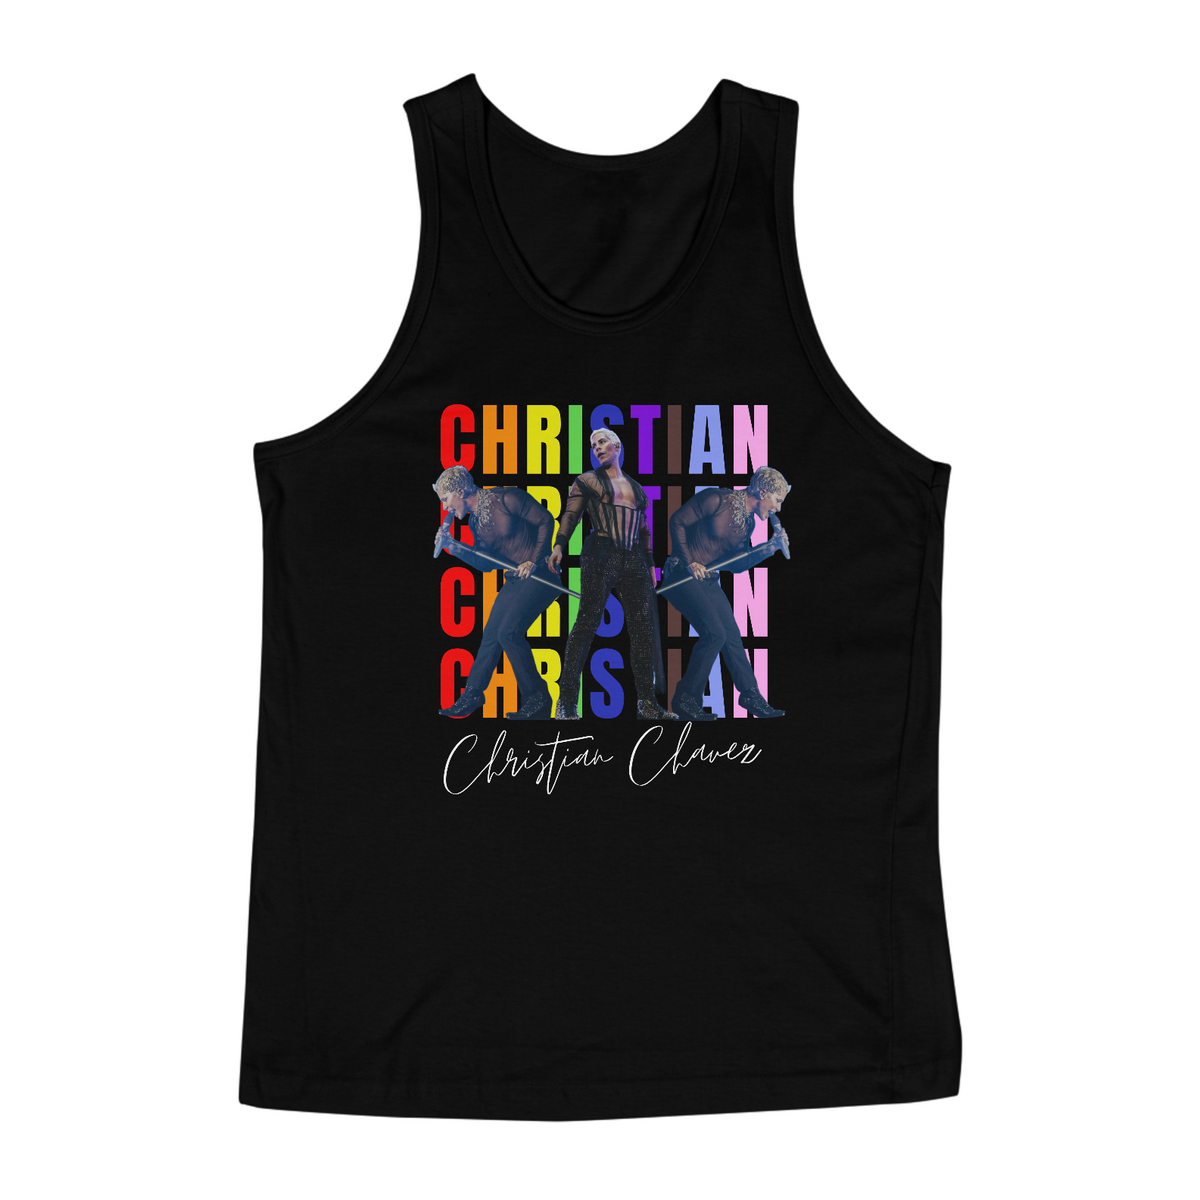 Nome do produto: Regata Masculina - Christian Chavez